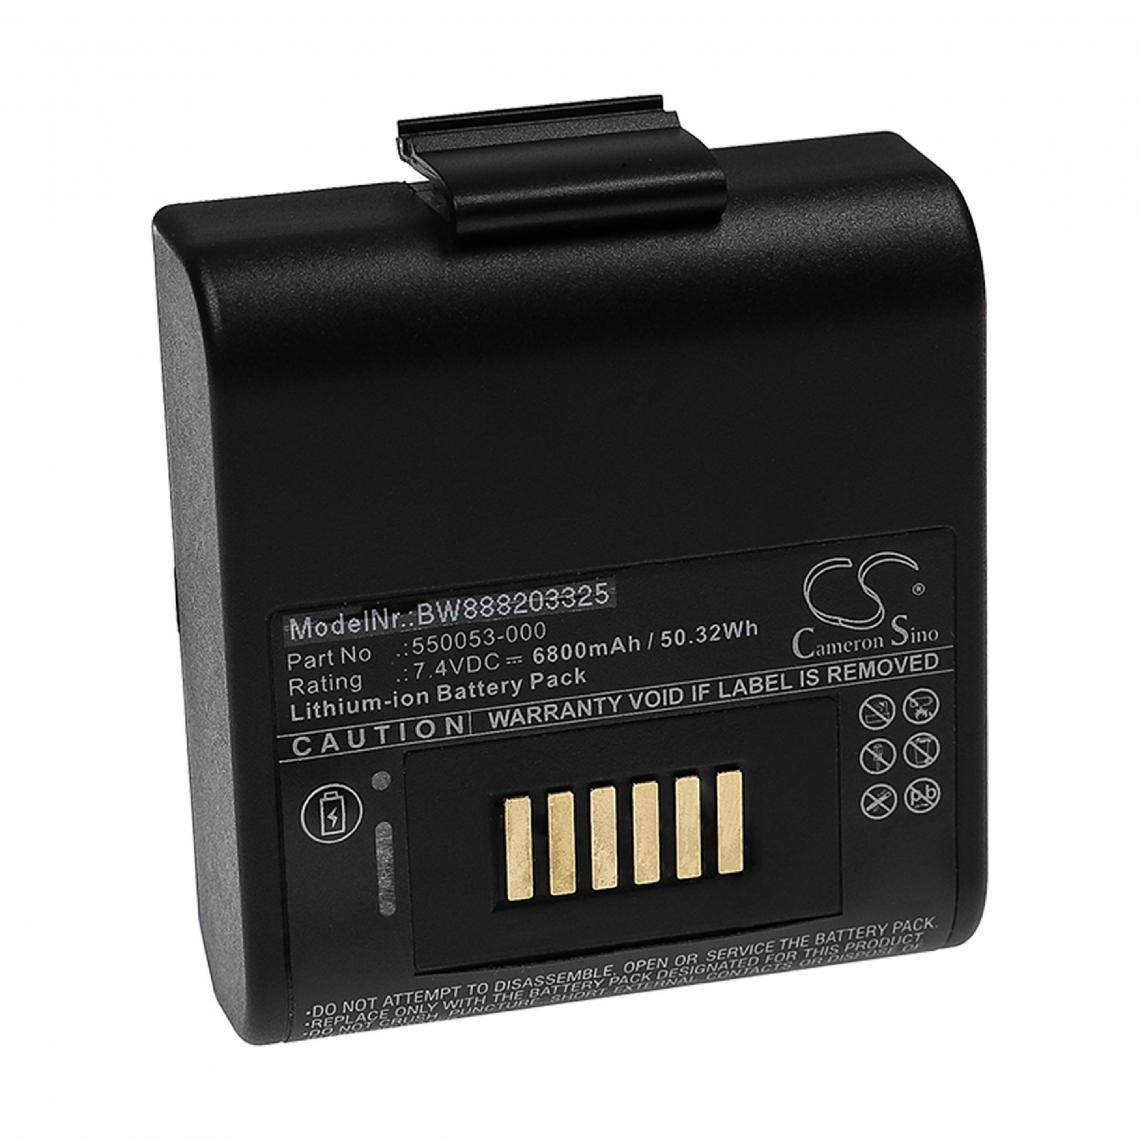 Vhbw - vhbw Batterie remplacement pour Intermec 550053-000 pour imprimante, scanner, imprimante d'étiquettes (6800mAh, 7,4V, Li-ion) - Imprimante Jet d'encre